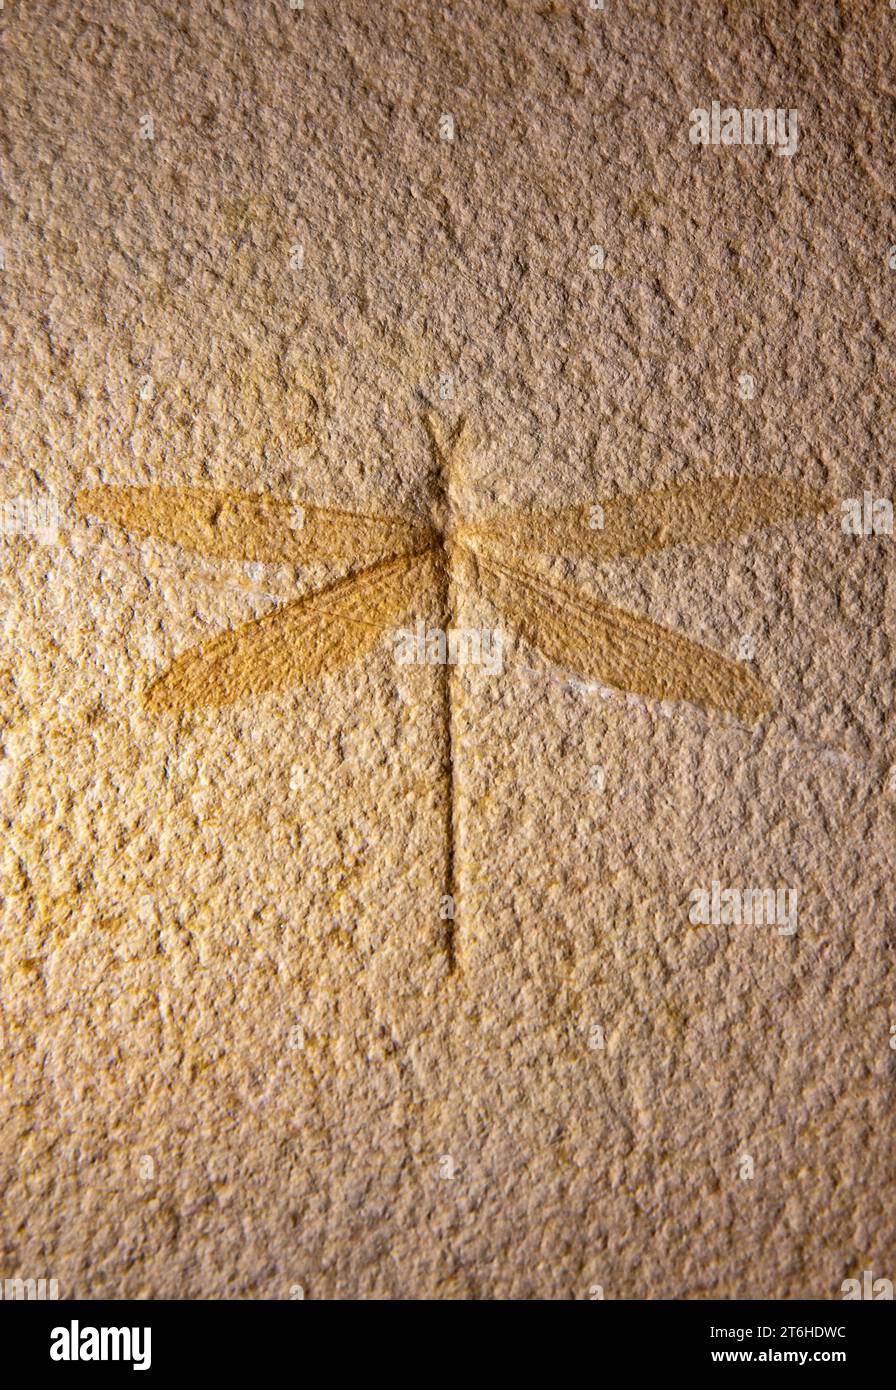 Insetto libellula fossilizzato nell'arenaria Foto Stock